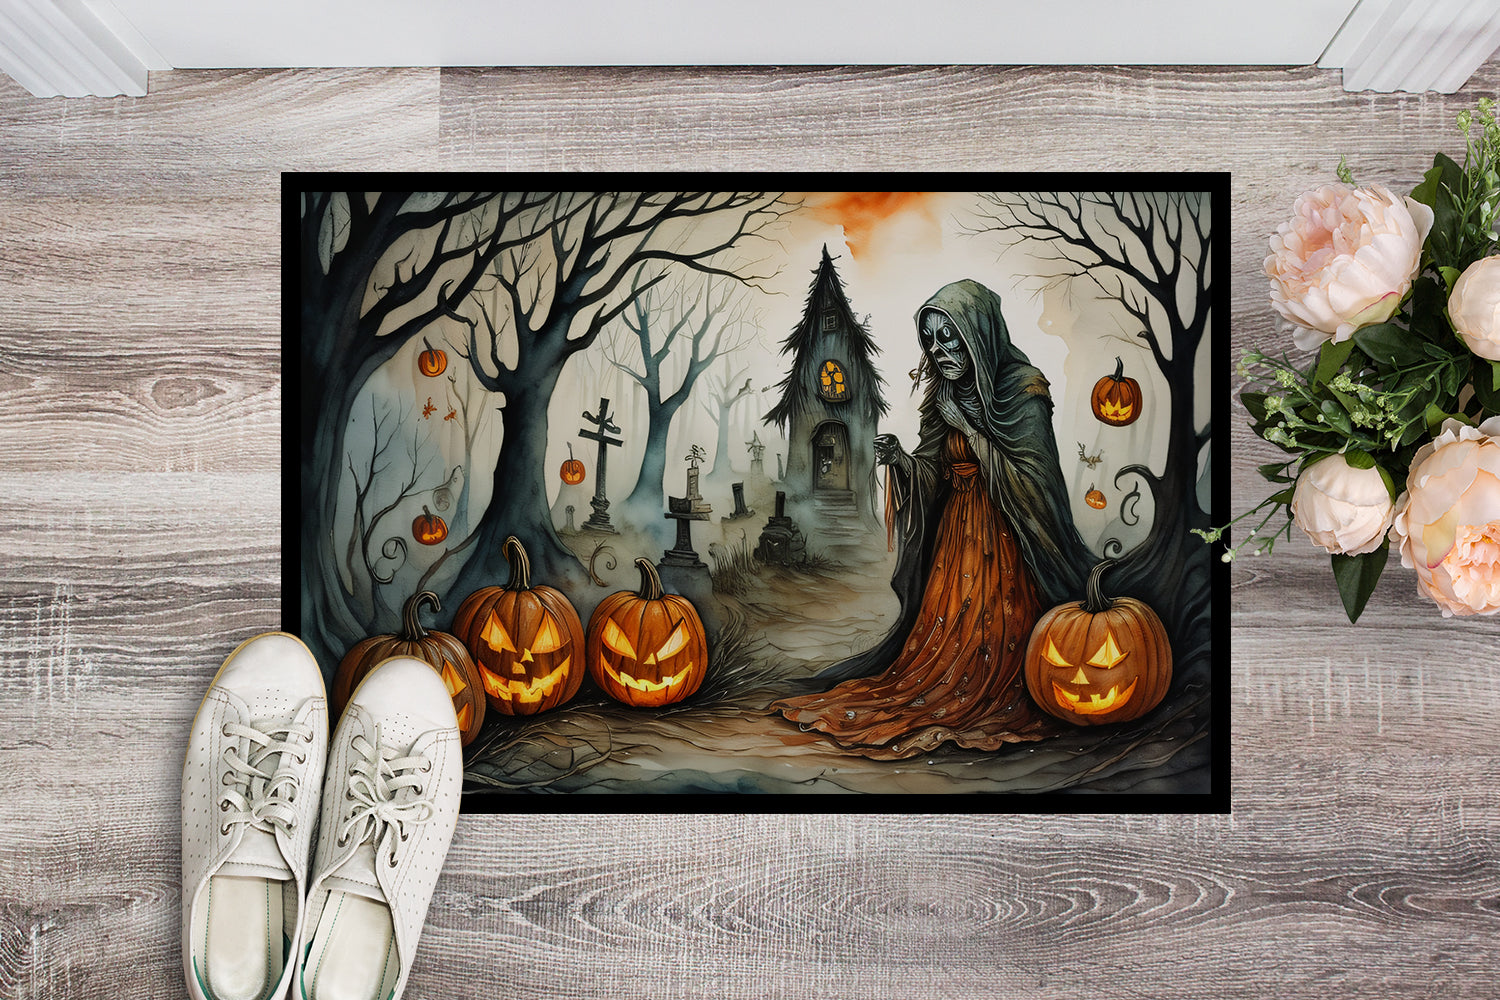 The Weeping Woman Spooky Halloween Doormat 18x27